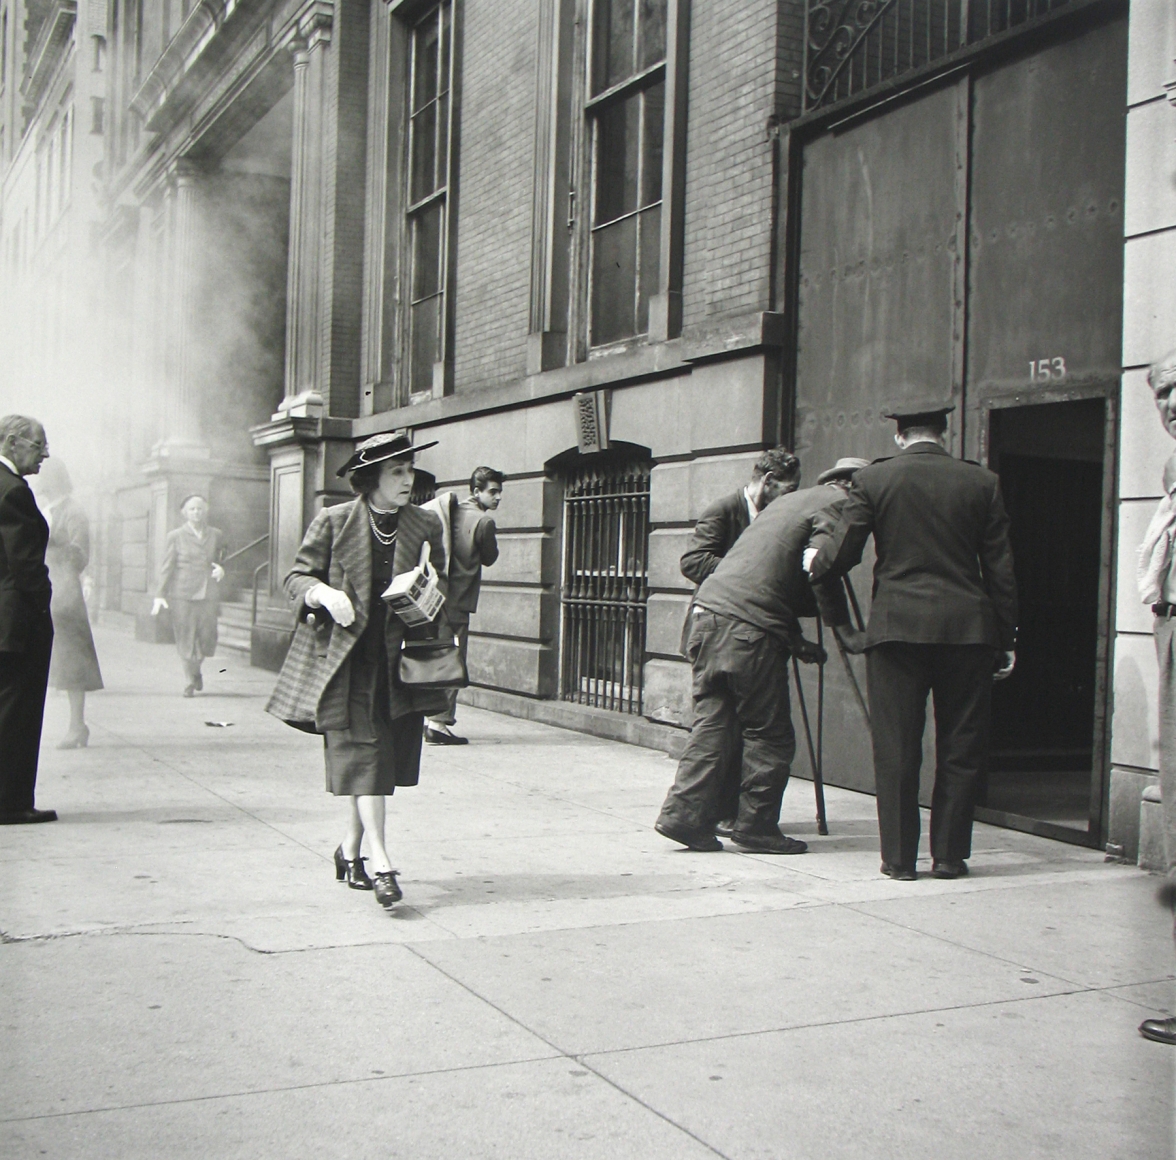 NY 1953 2 Kim była Vivian Maier i dlaczego „niania duch” przeszła do historii fotografii?